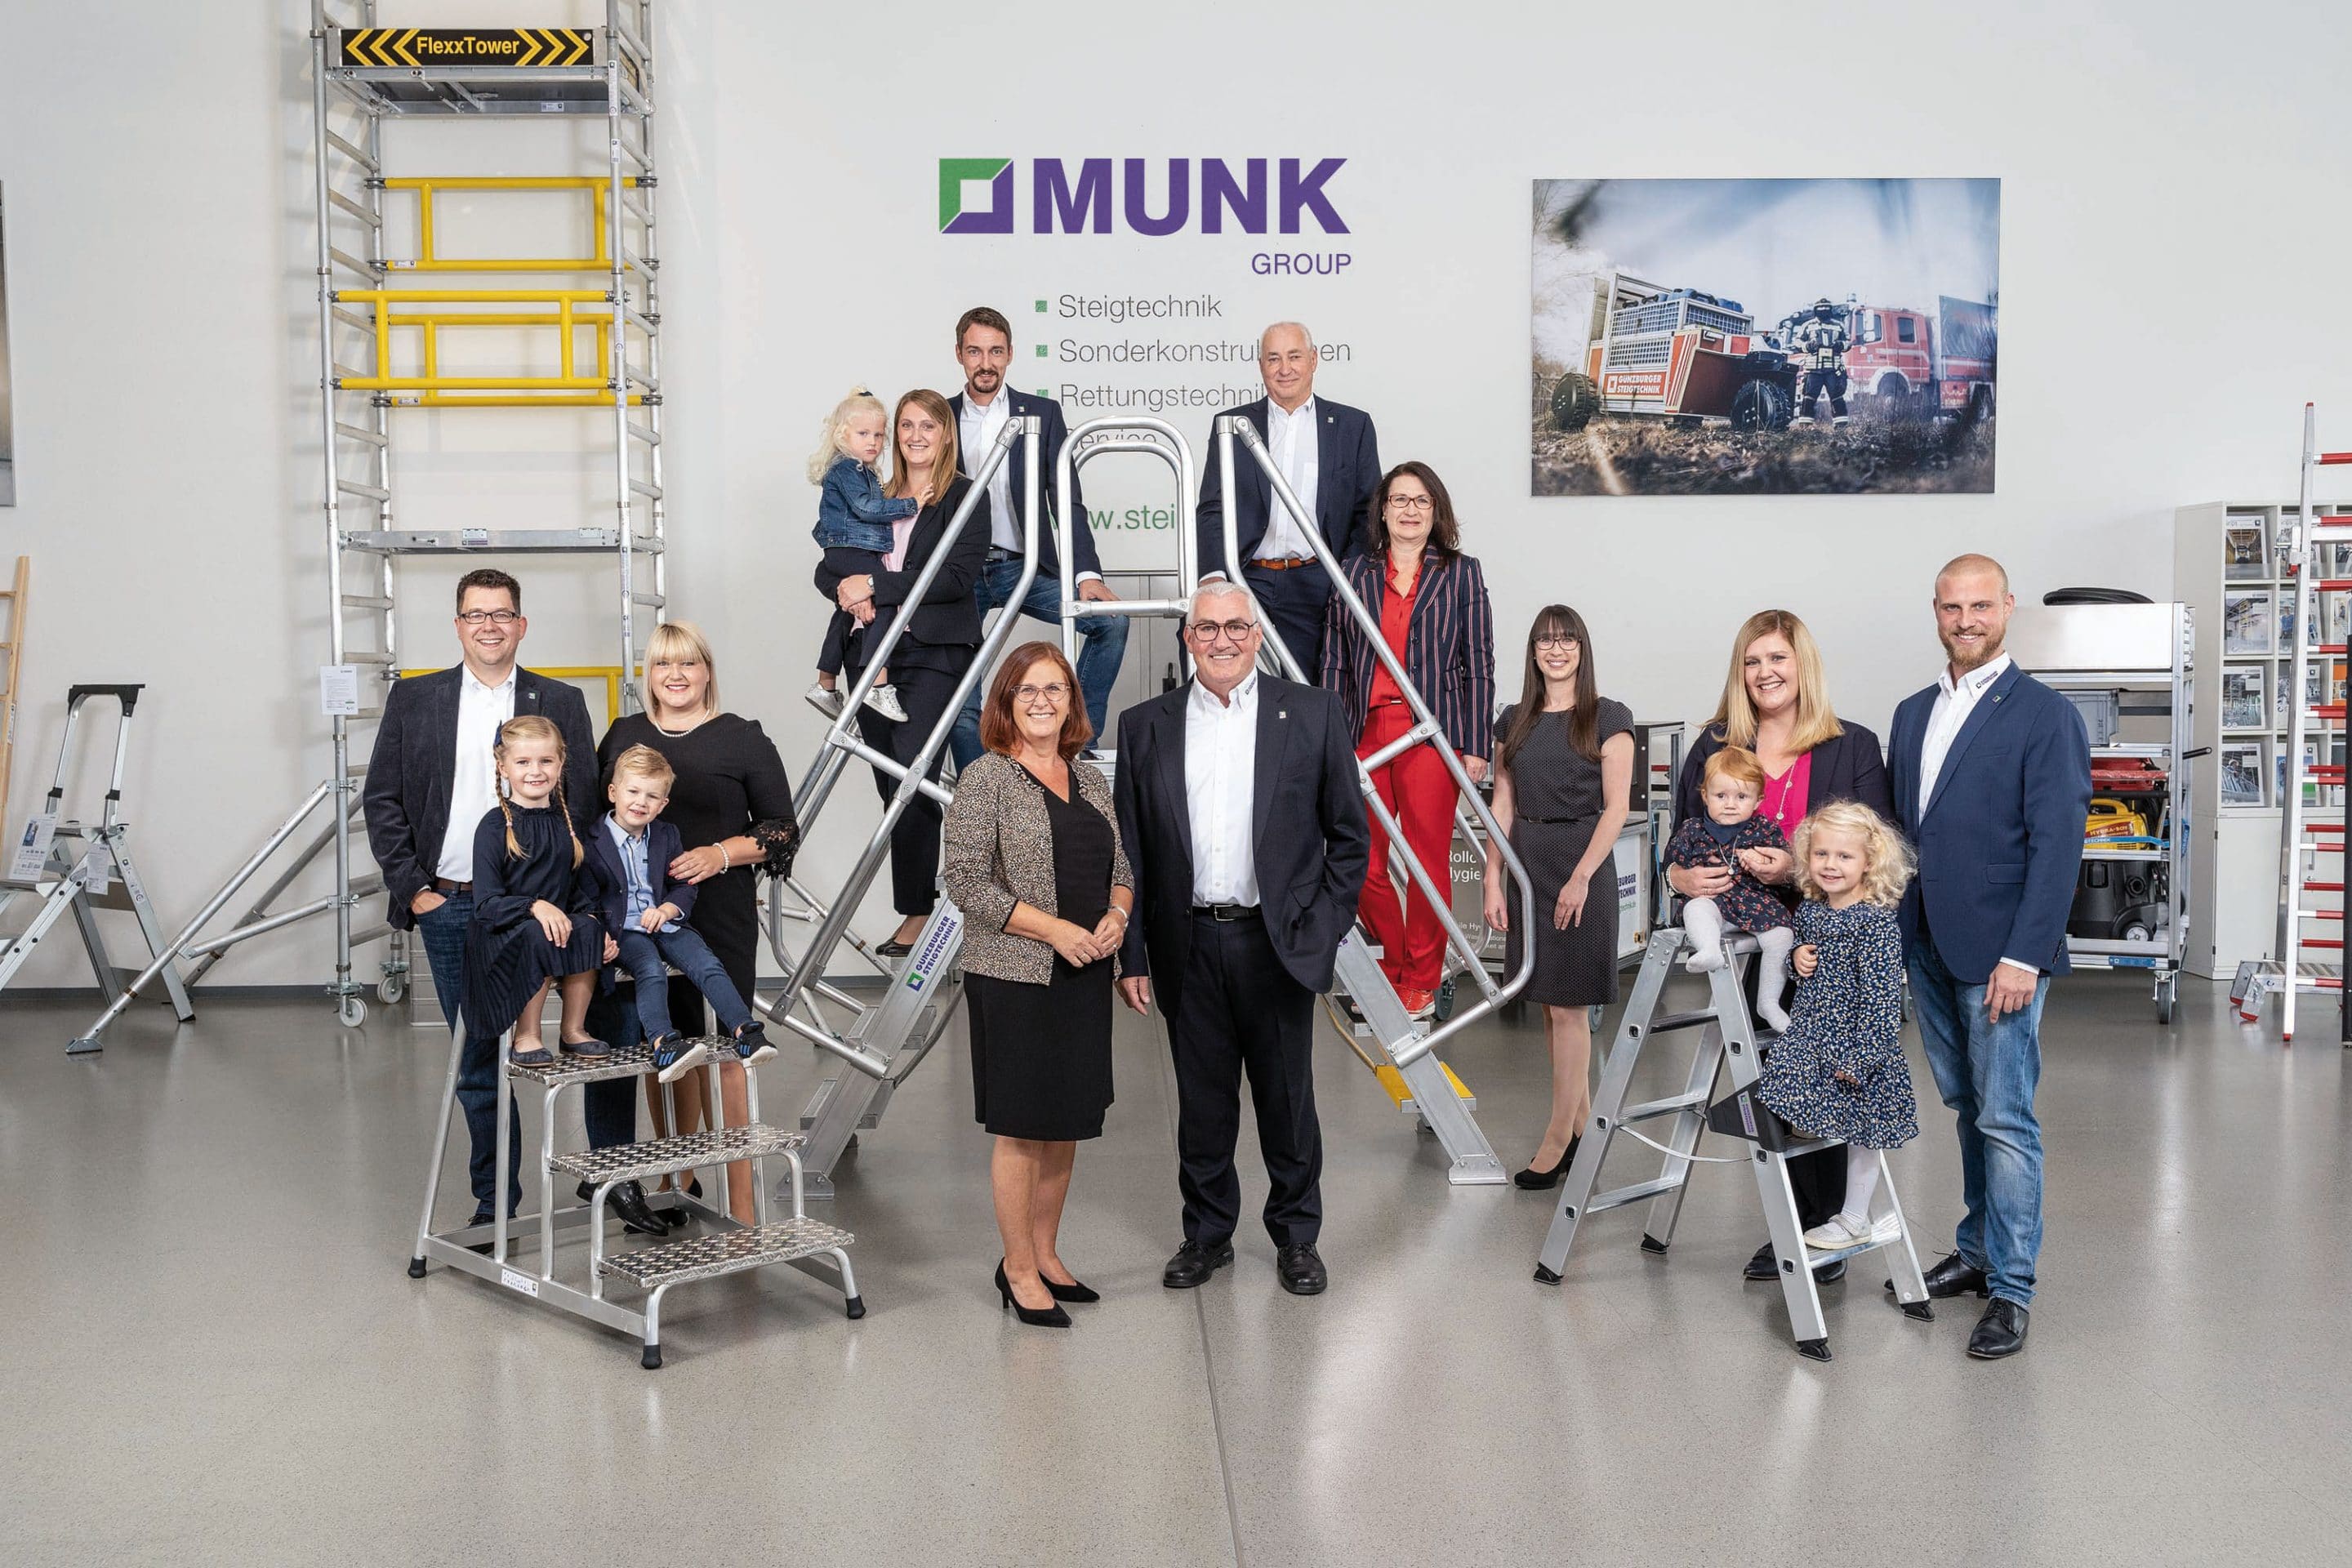 Der Name der Unternehmerfamilie Munk spiegelt sich nun auch im Unternehmensnamen wider: Die Munk Group